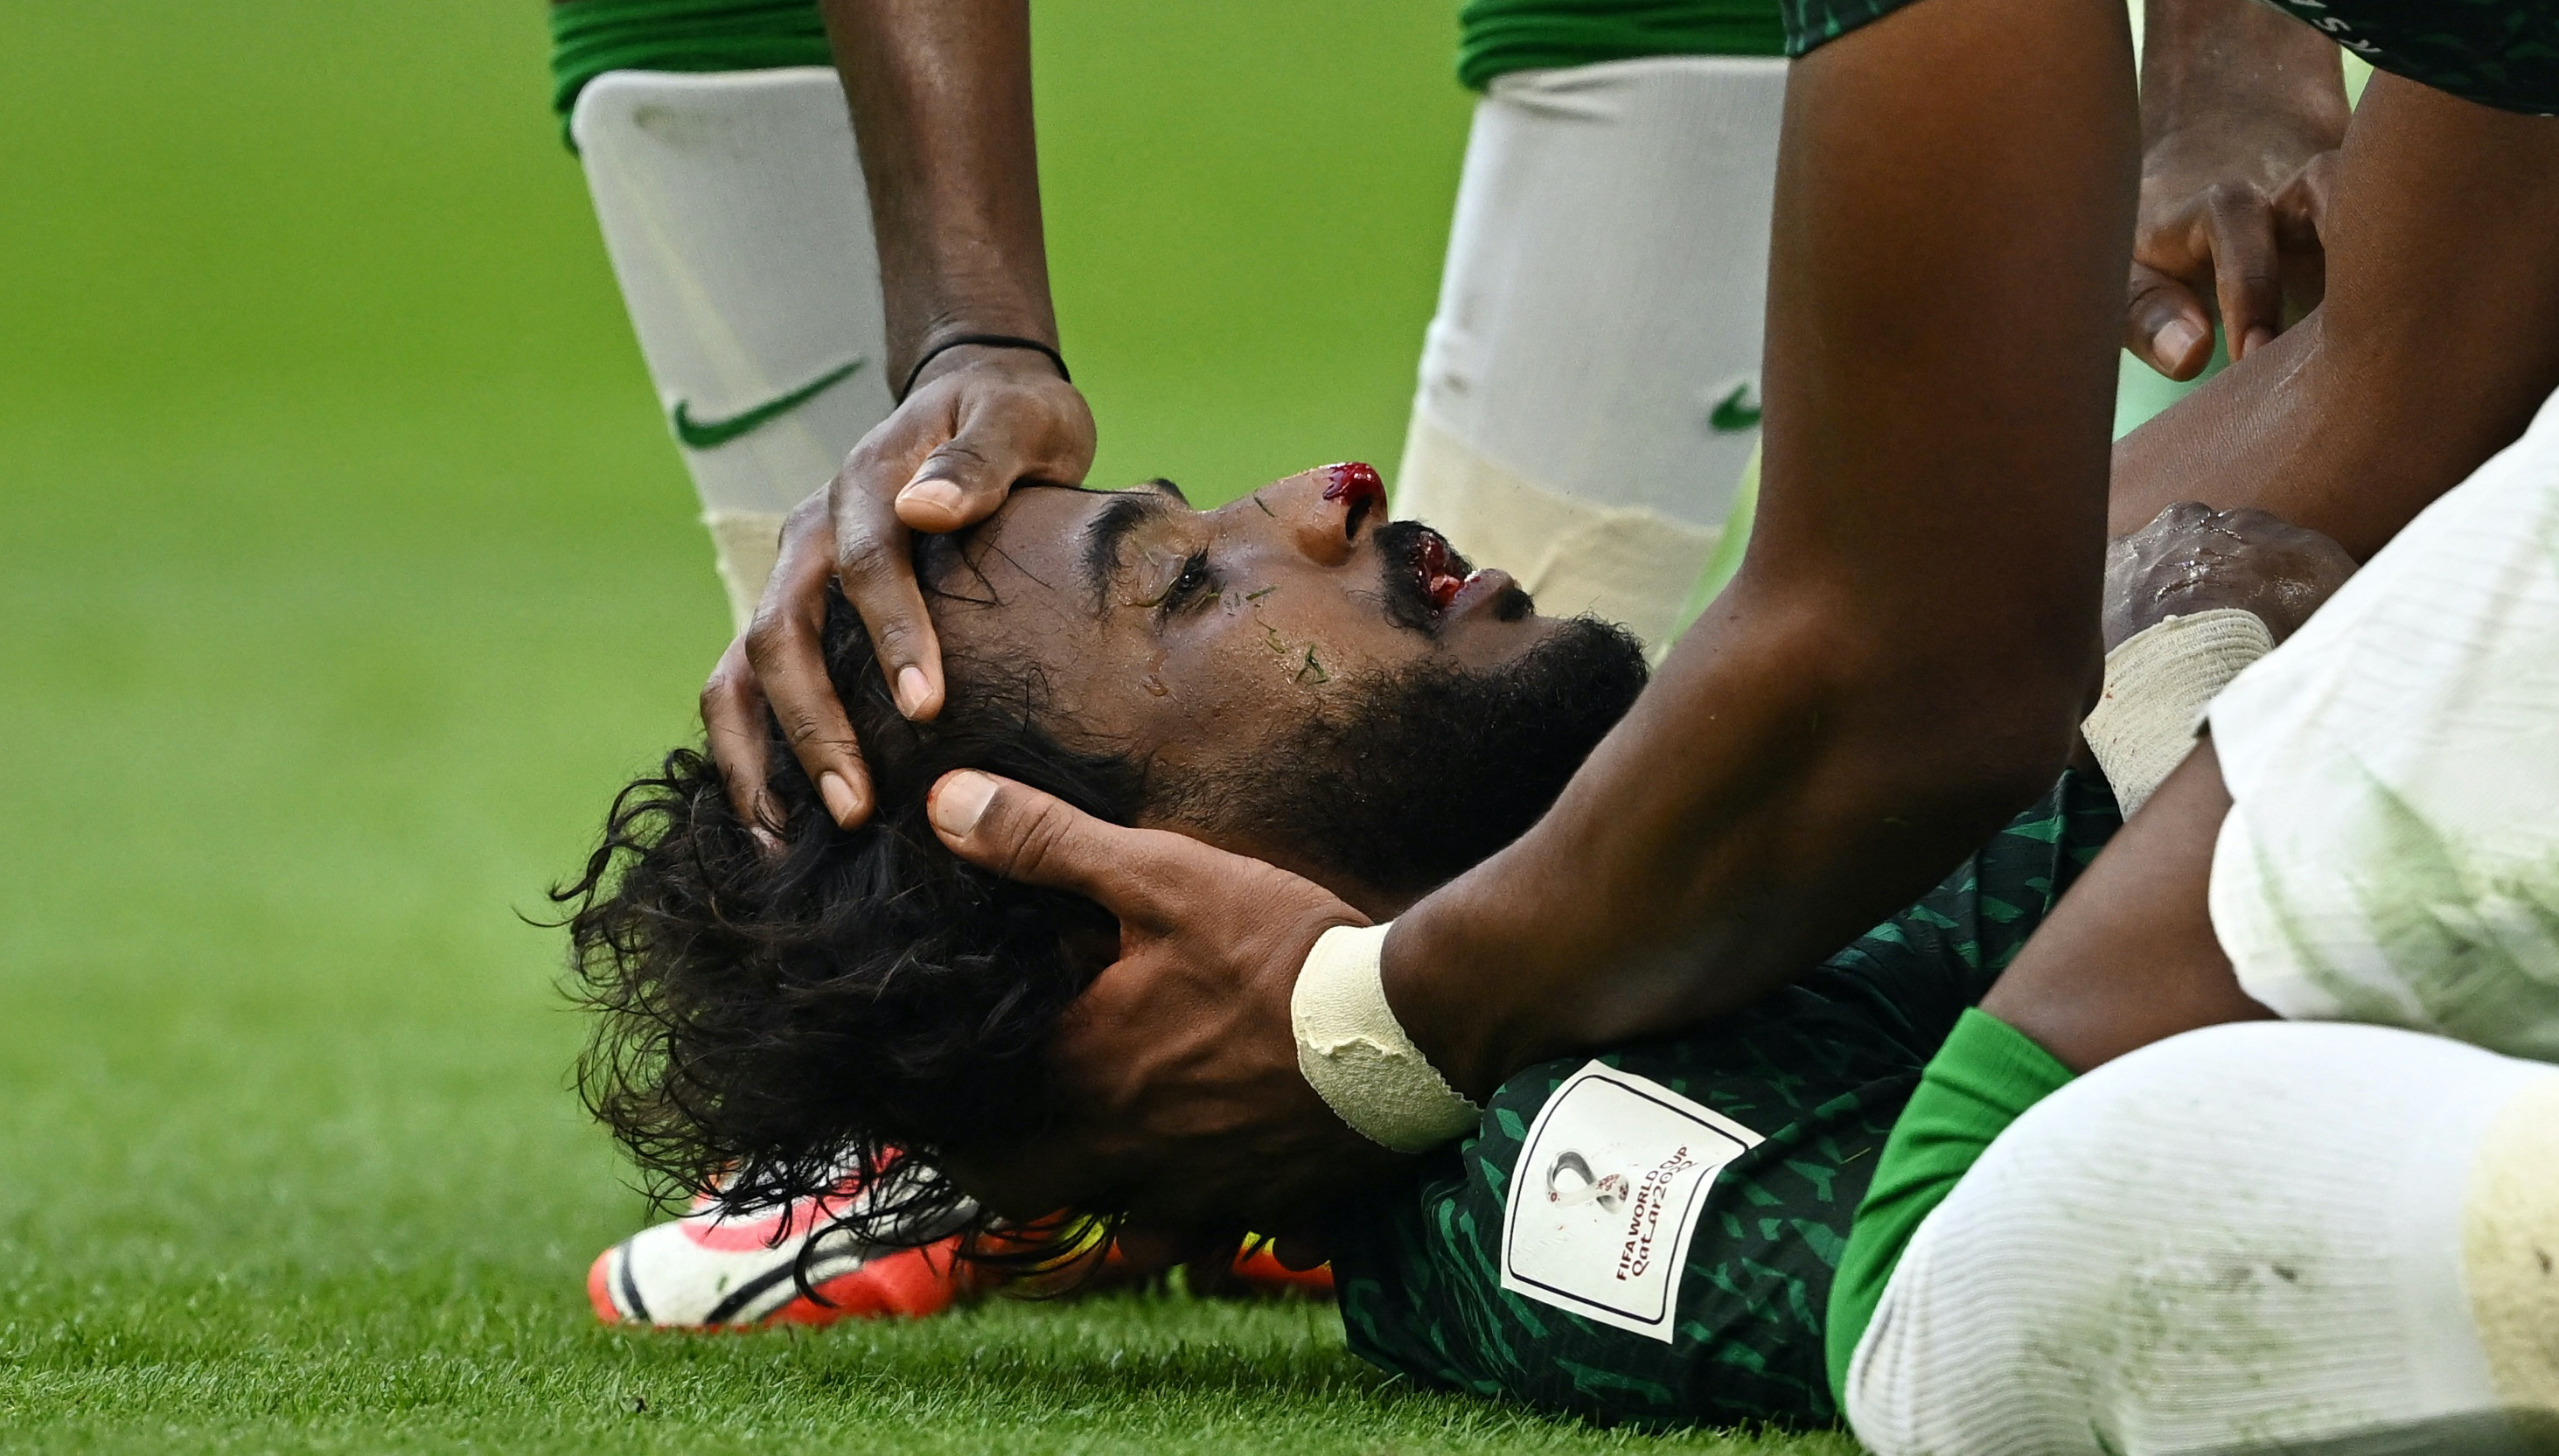 Суперкубок саудовской аравии по футболу. Саид Аль-Овайран. Ясир Аль Шахрани. Травма футболиста Саудовской Аравии.